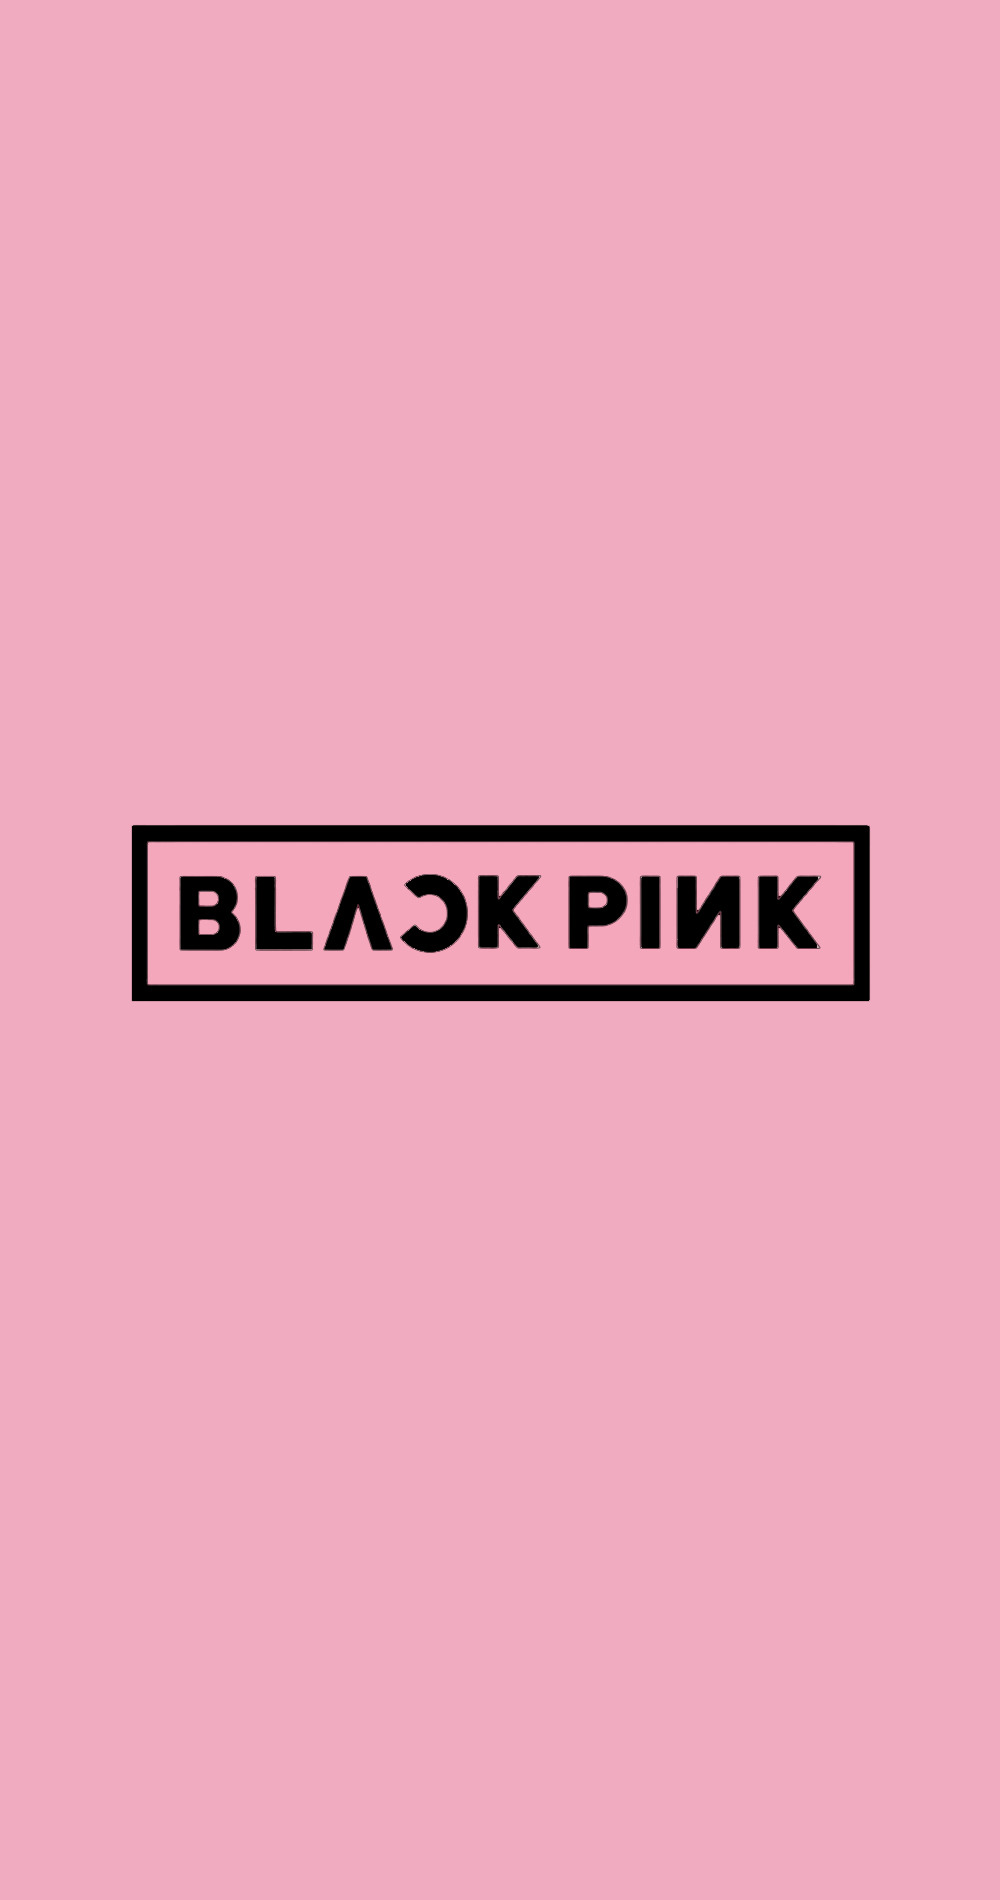 Blackpink Logos